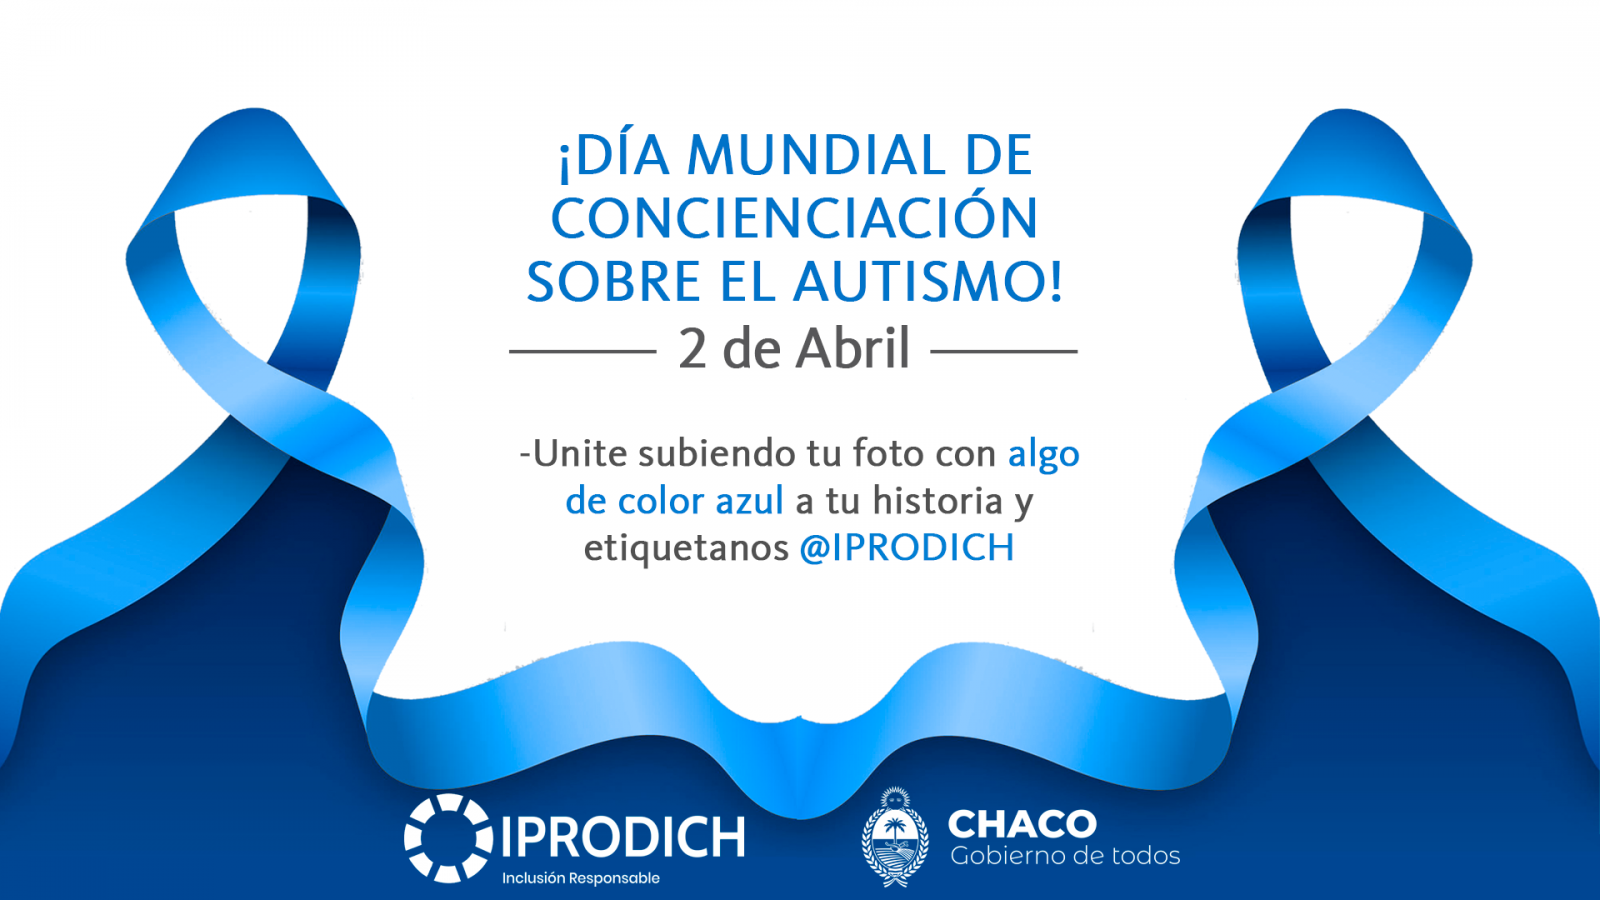 2 de Abril: IPRODICH invita a llevar alguna prenda de color azul por el Día Mundial del Autismo